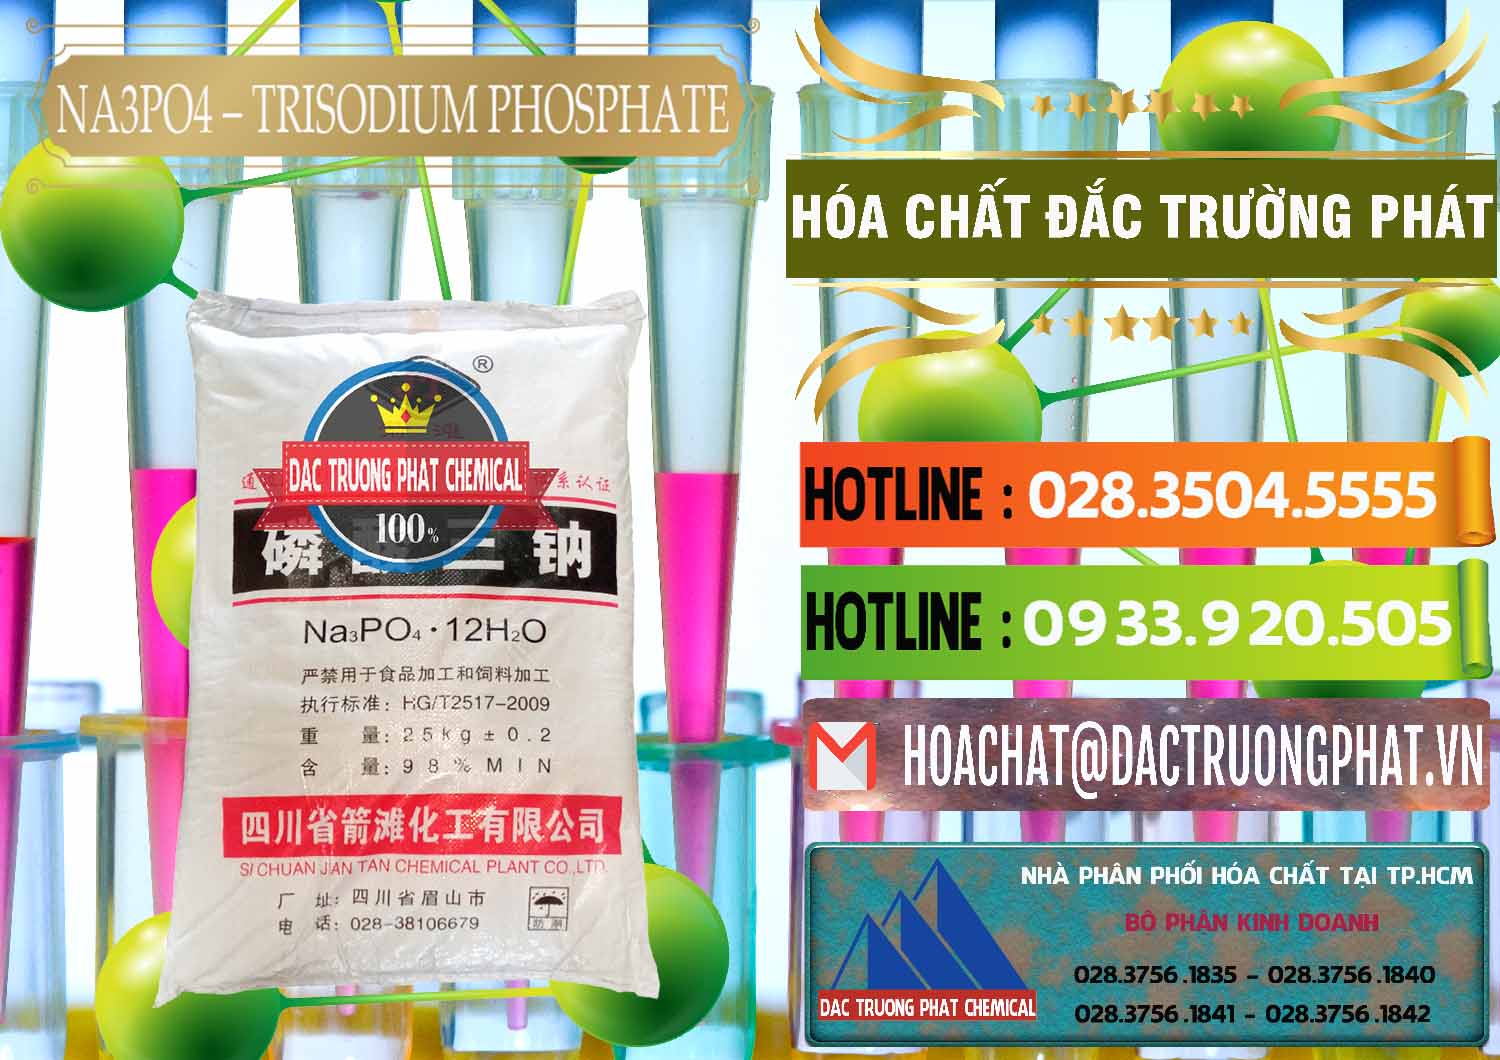 Đơn vị chuyên phân phối & bán Na3PO4 – Trisodium Phosphate Trung Quốc China JT - 0102 - Cty chuyên bán ( cung cấp ) hóa chất tại TP.HCM - cungcaphoachat.com.vn